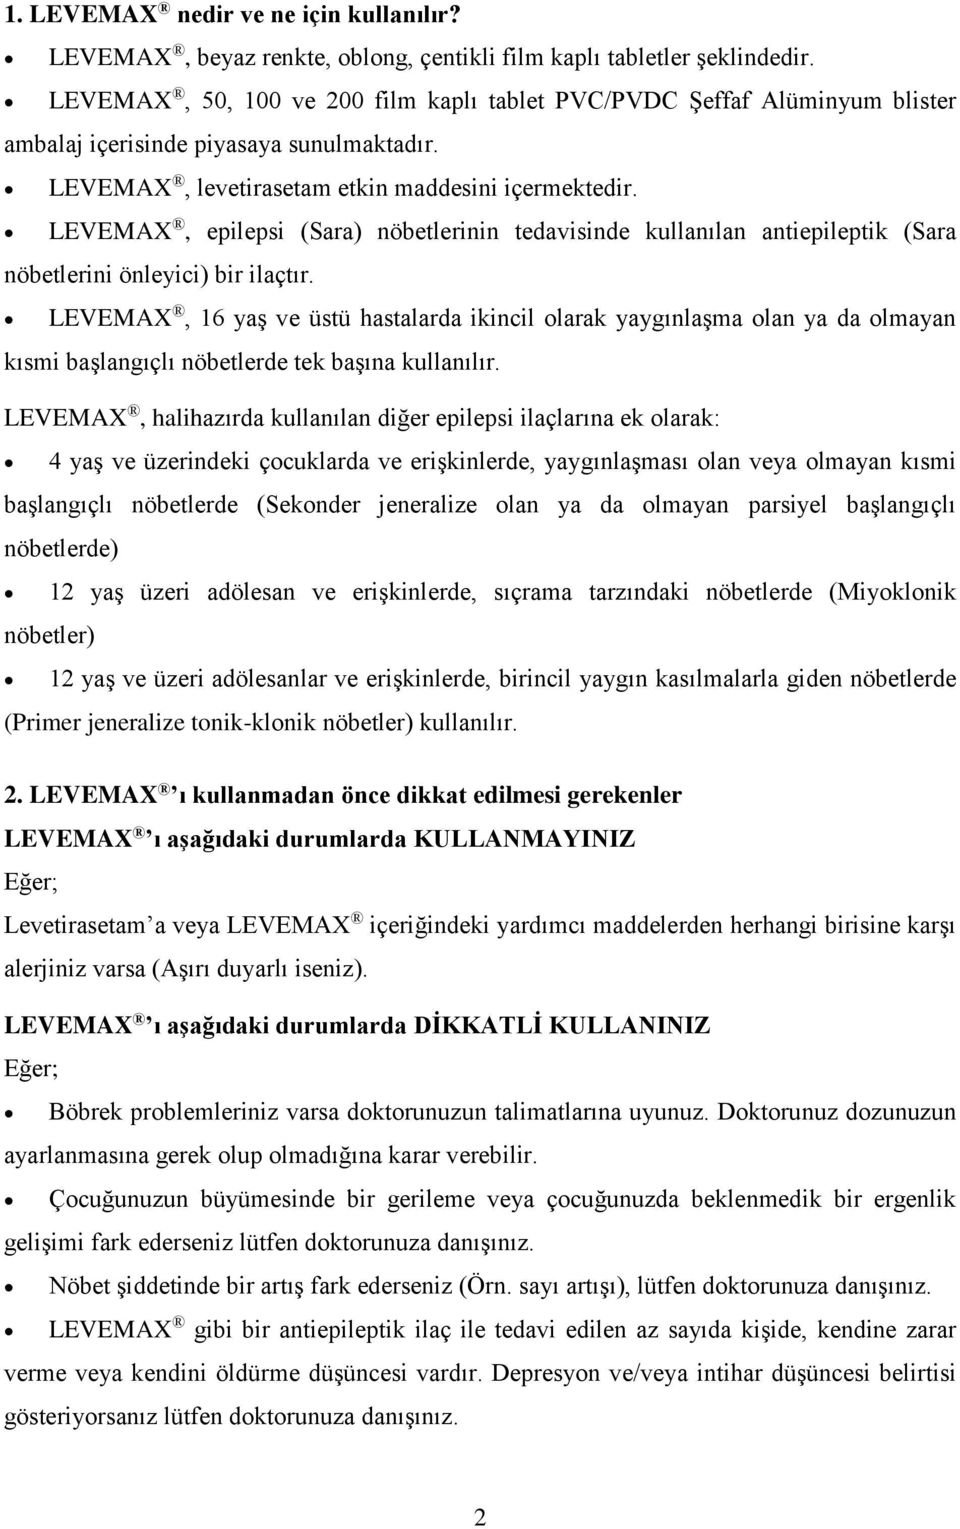 LEVEMAX, epilepsi (Sara) nöbetlerinin tedavisinde kullanılan antiepileptik (Sara nöbetlerini önleyici) bir ilaçtır.